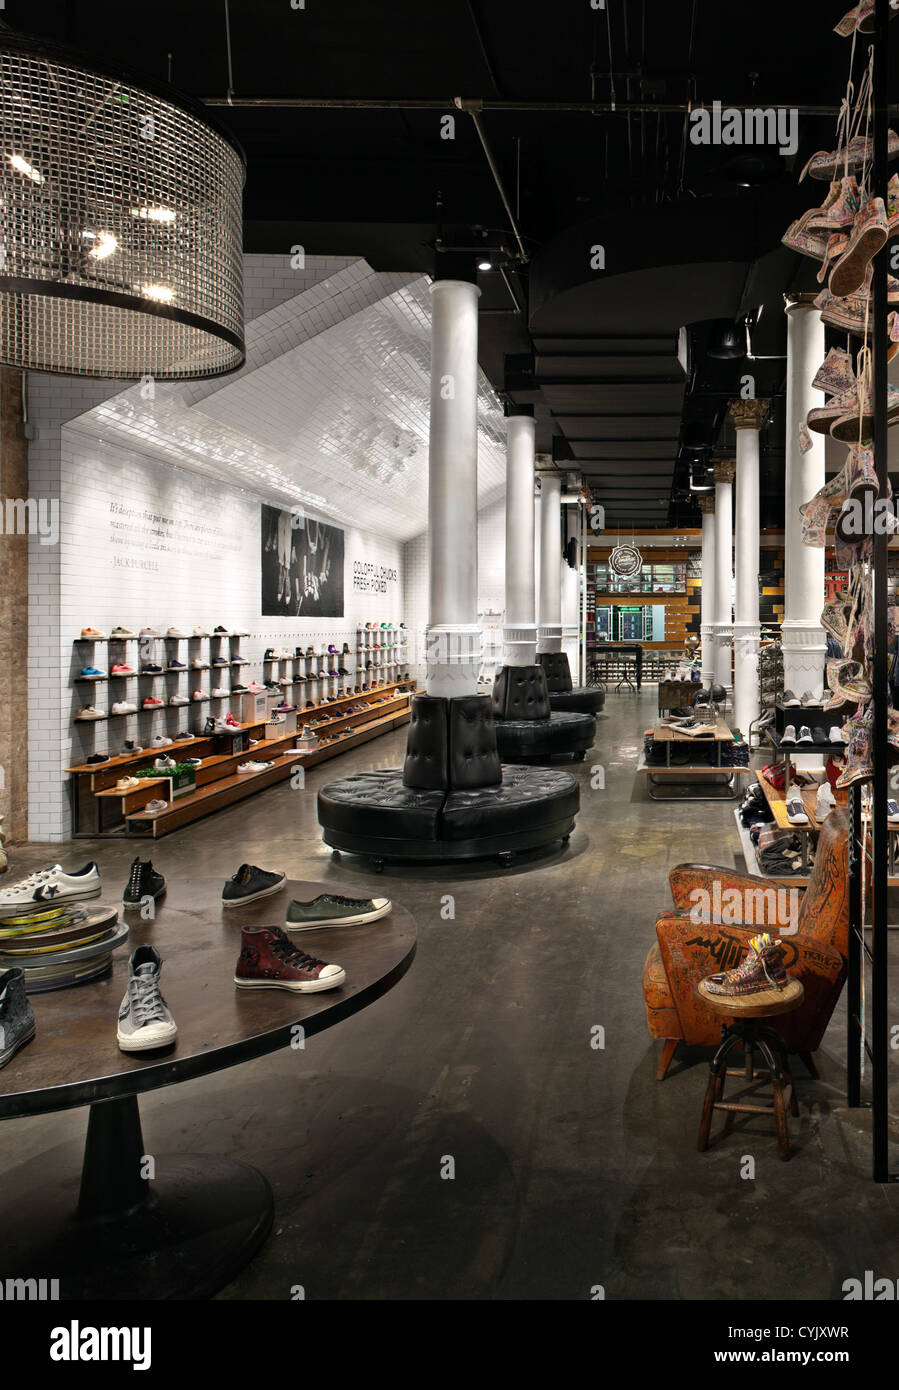 Converse magasin phare, New York, United States. Architecte : Jennifer Carpenter Architecte, 2011. Magasin de vente au détail de vêtements, chaussures, c Banque D'Images